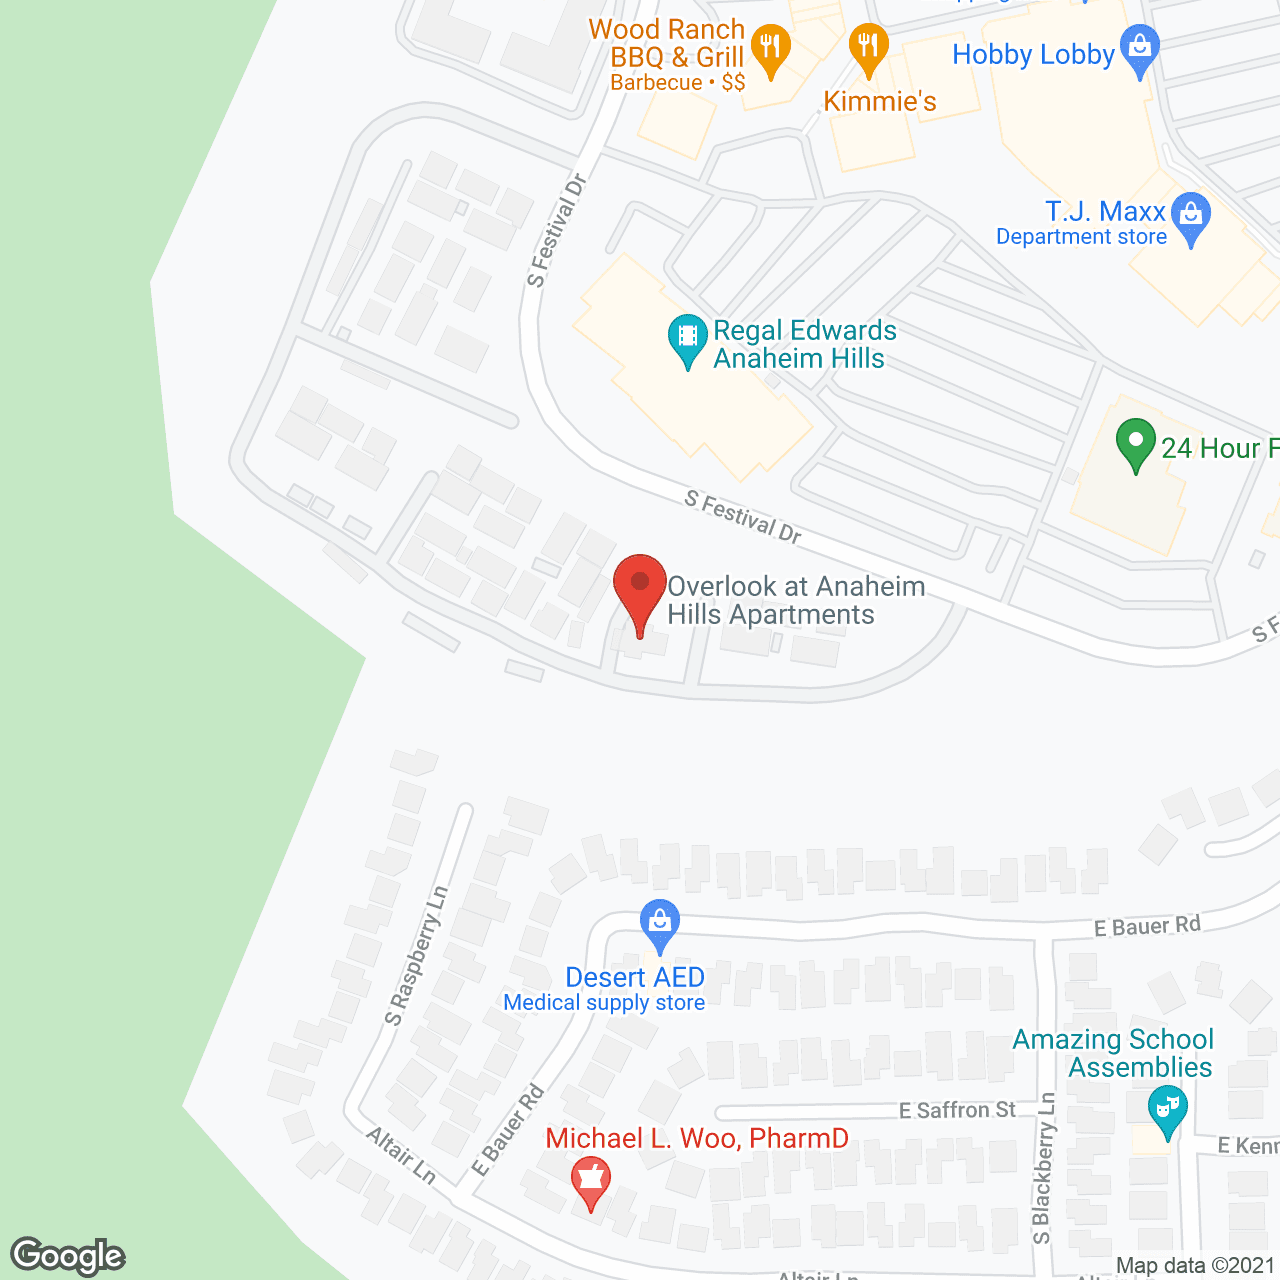 FountainGlen at Anaheim Hills in google map